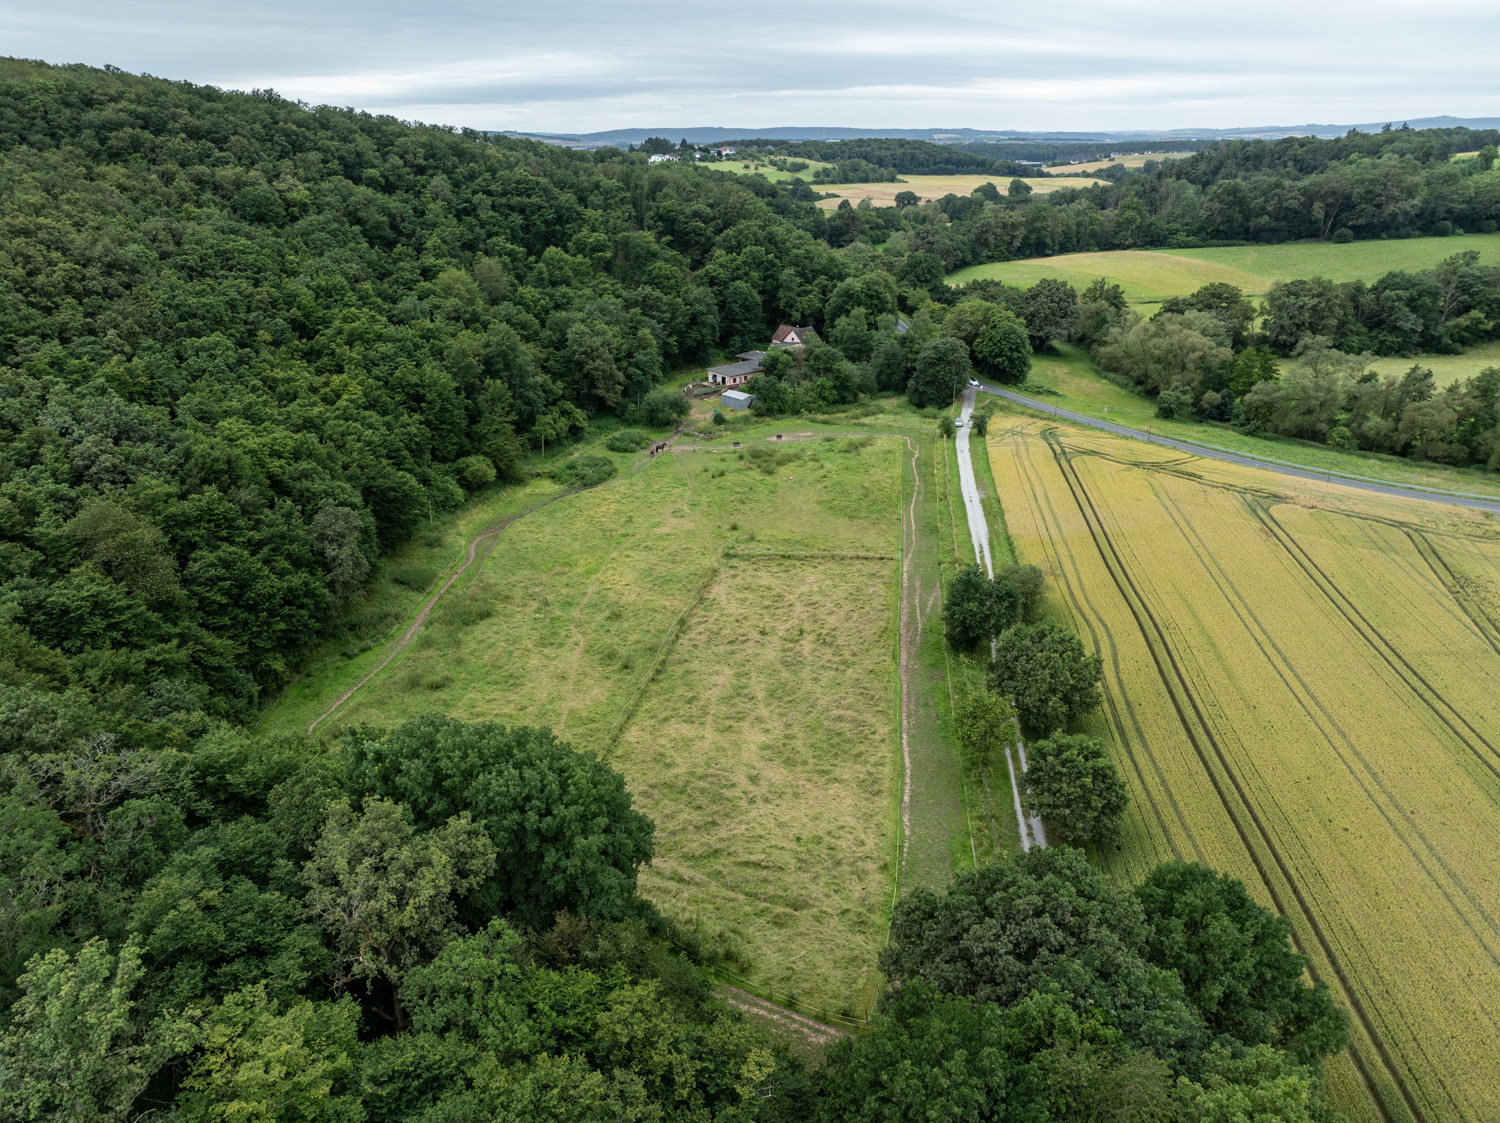 großes Landhaus auf Traumgrundstück in Alleinlage, Weiden, Stall, Pferde- Tierhaltung - Nähe Limburg